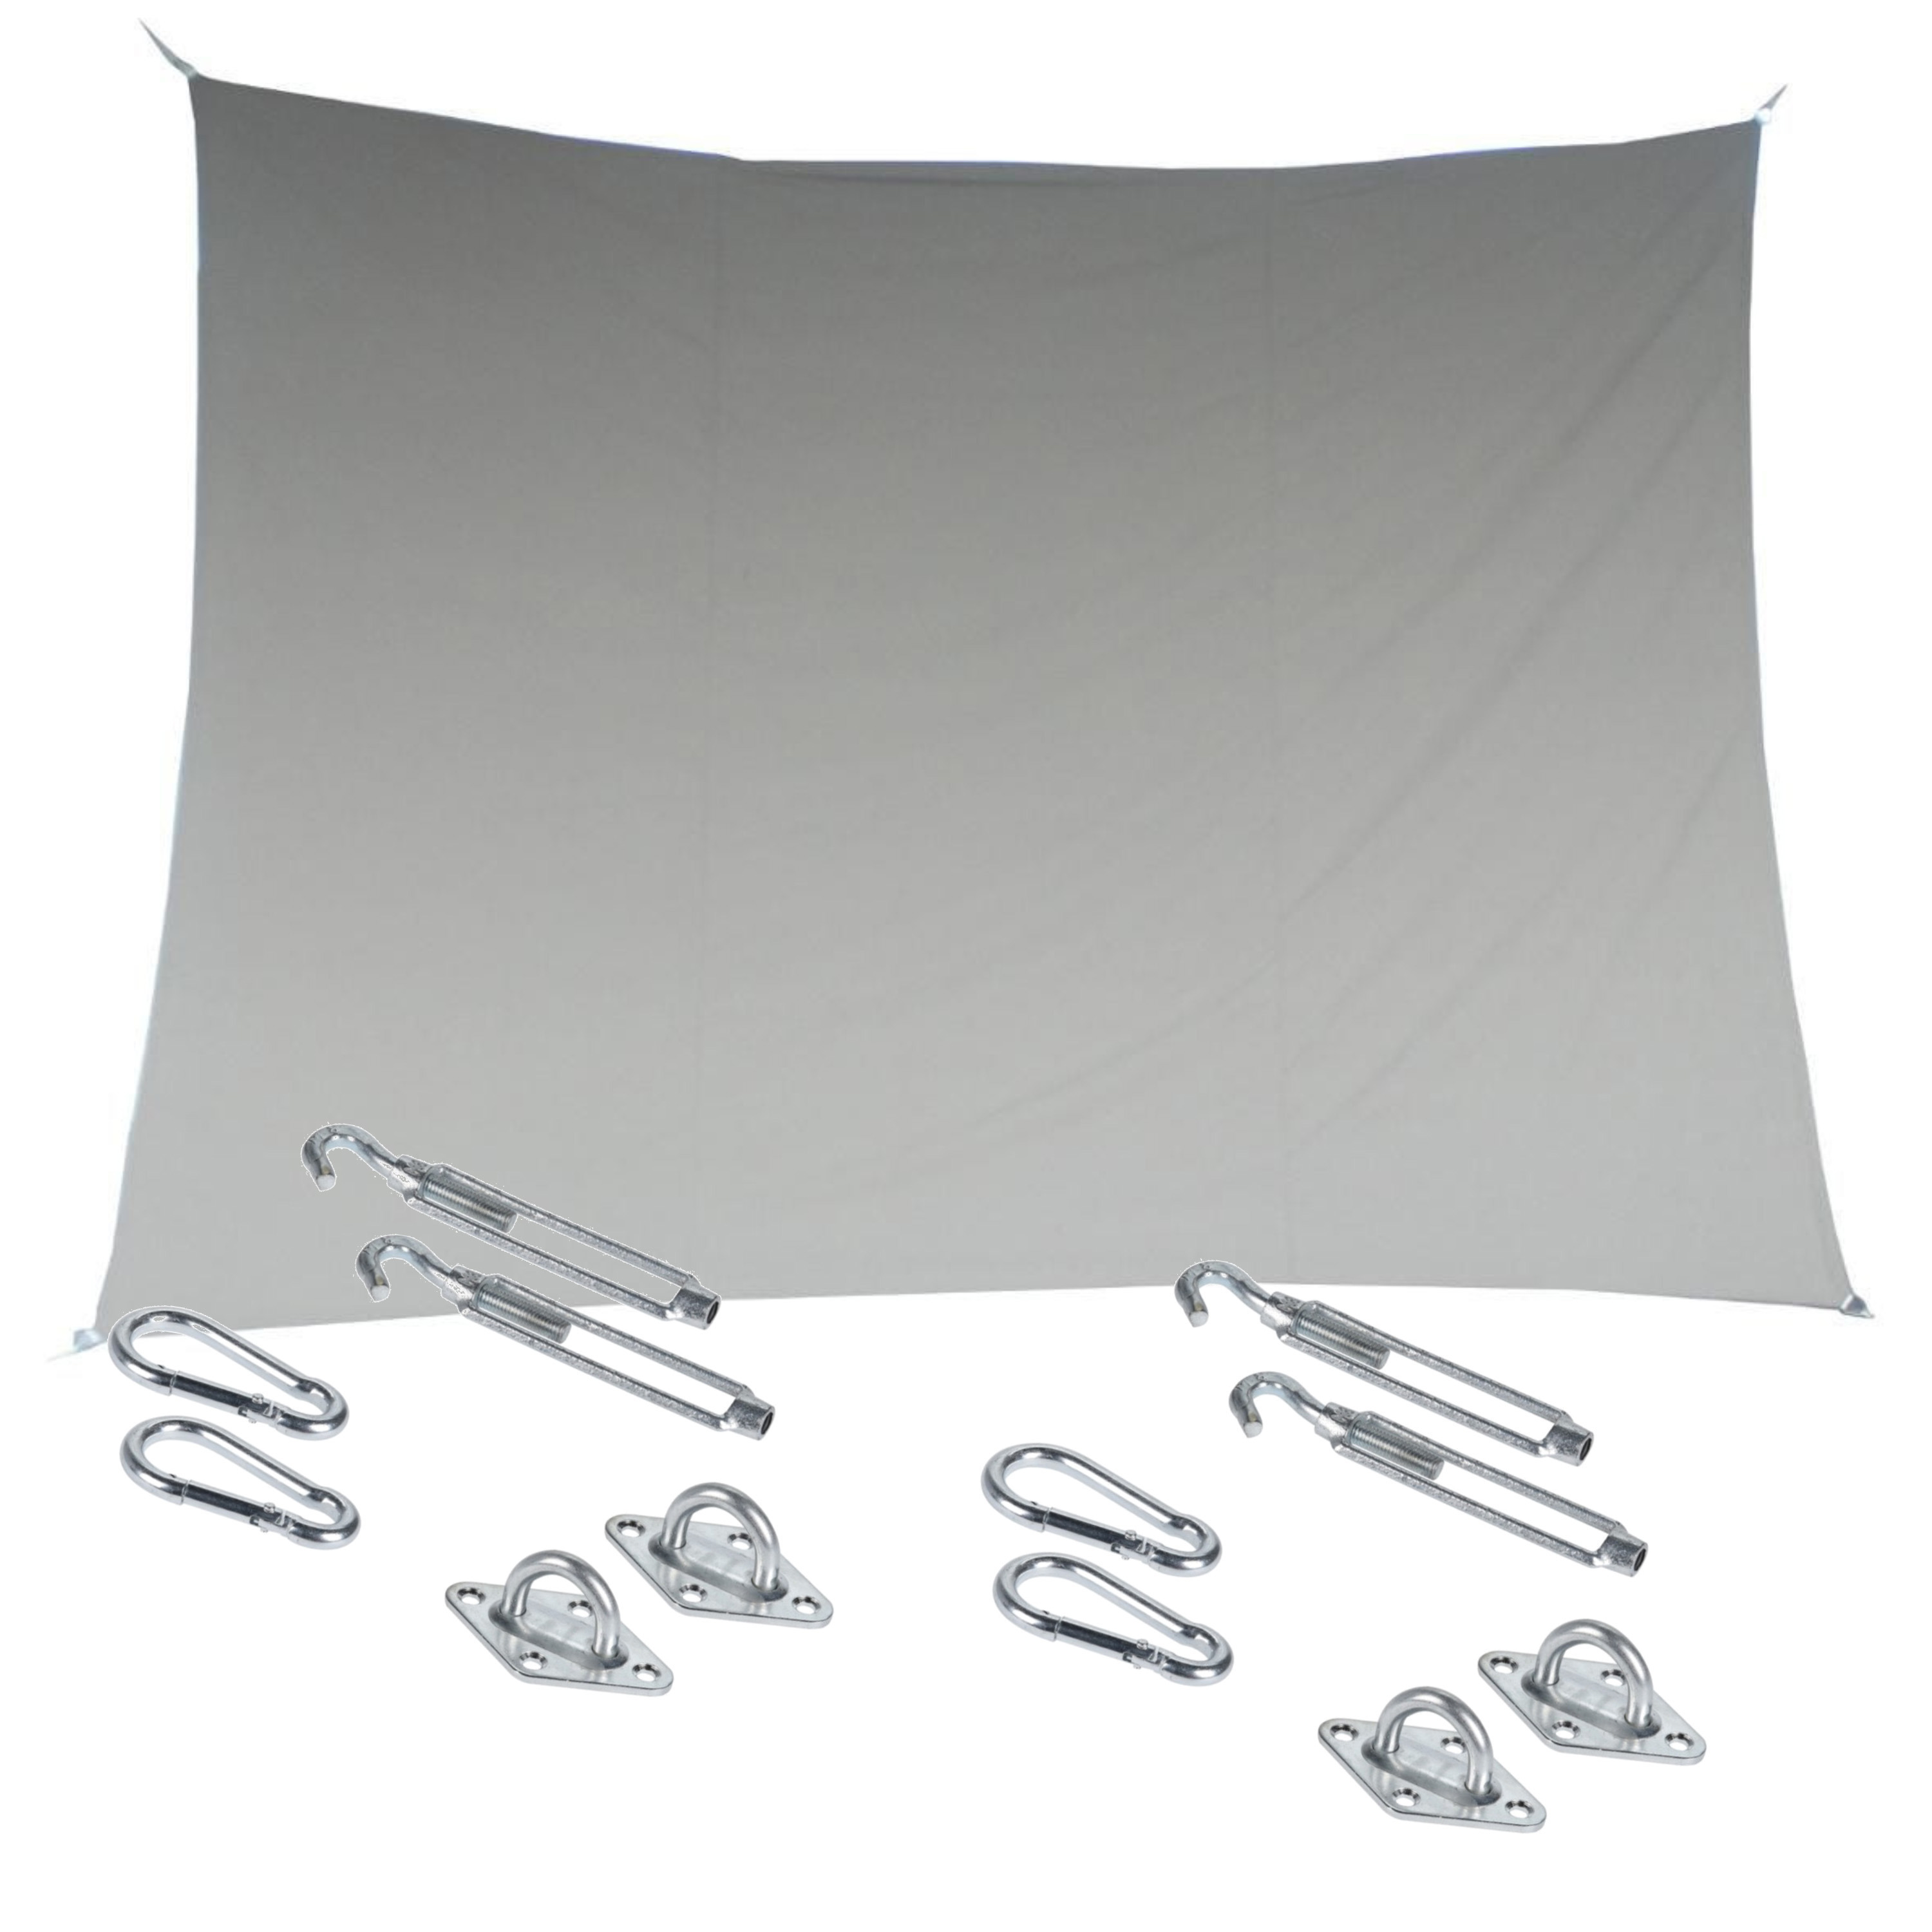 Premium kwaliteit schaduwdoek-zonnescherm Shae rechthoekig beige 3 x 4 meter met ophanghaken